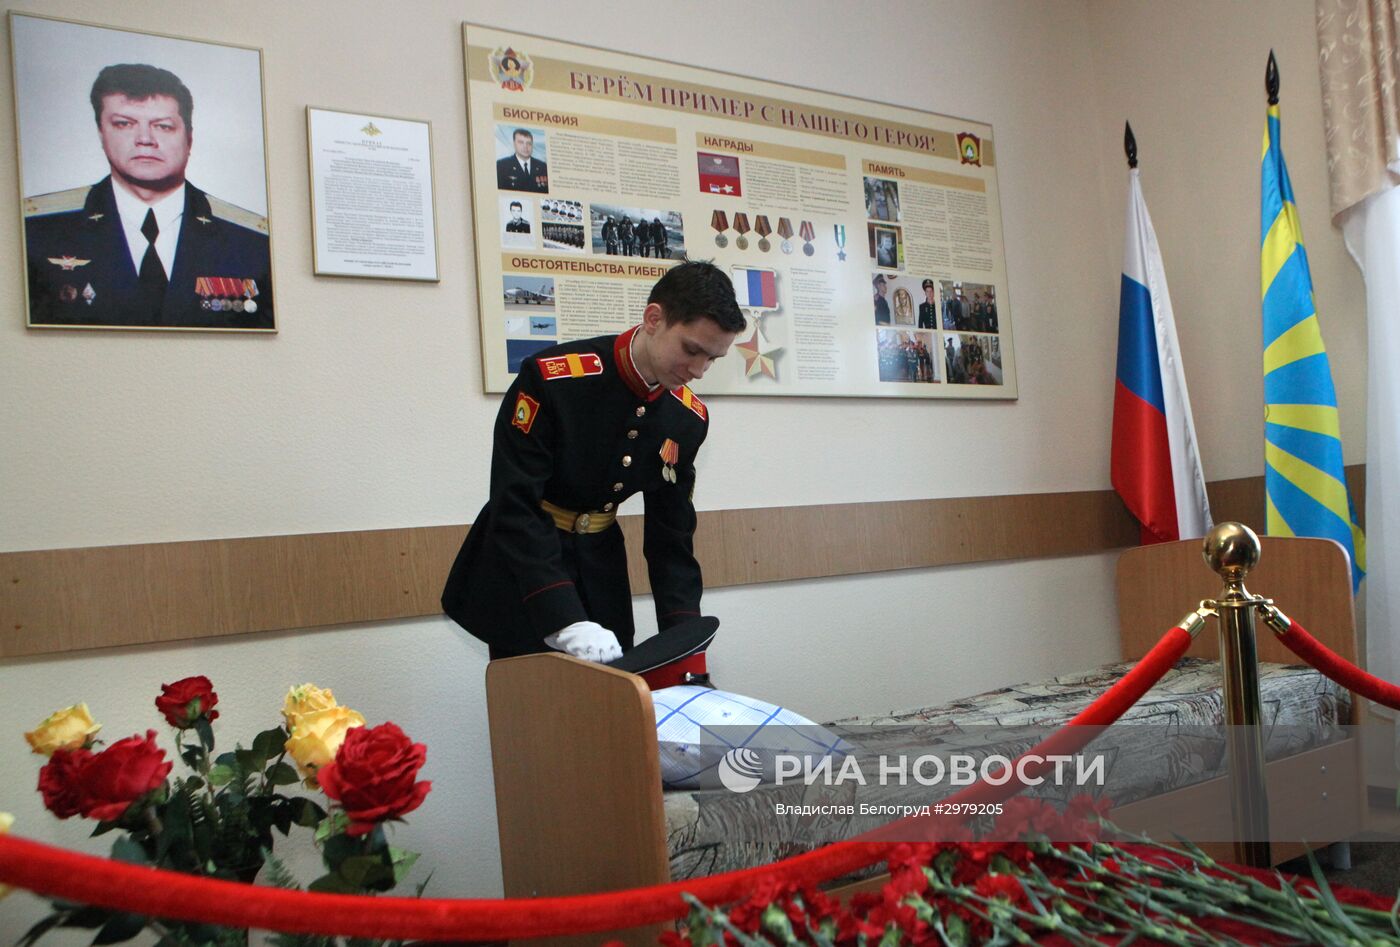 Герой России Олег Пешков навечно включен в список Екатеринбургского суворовского училища